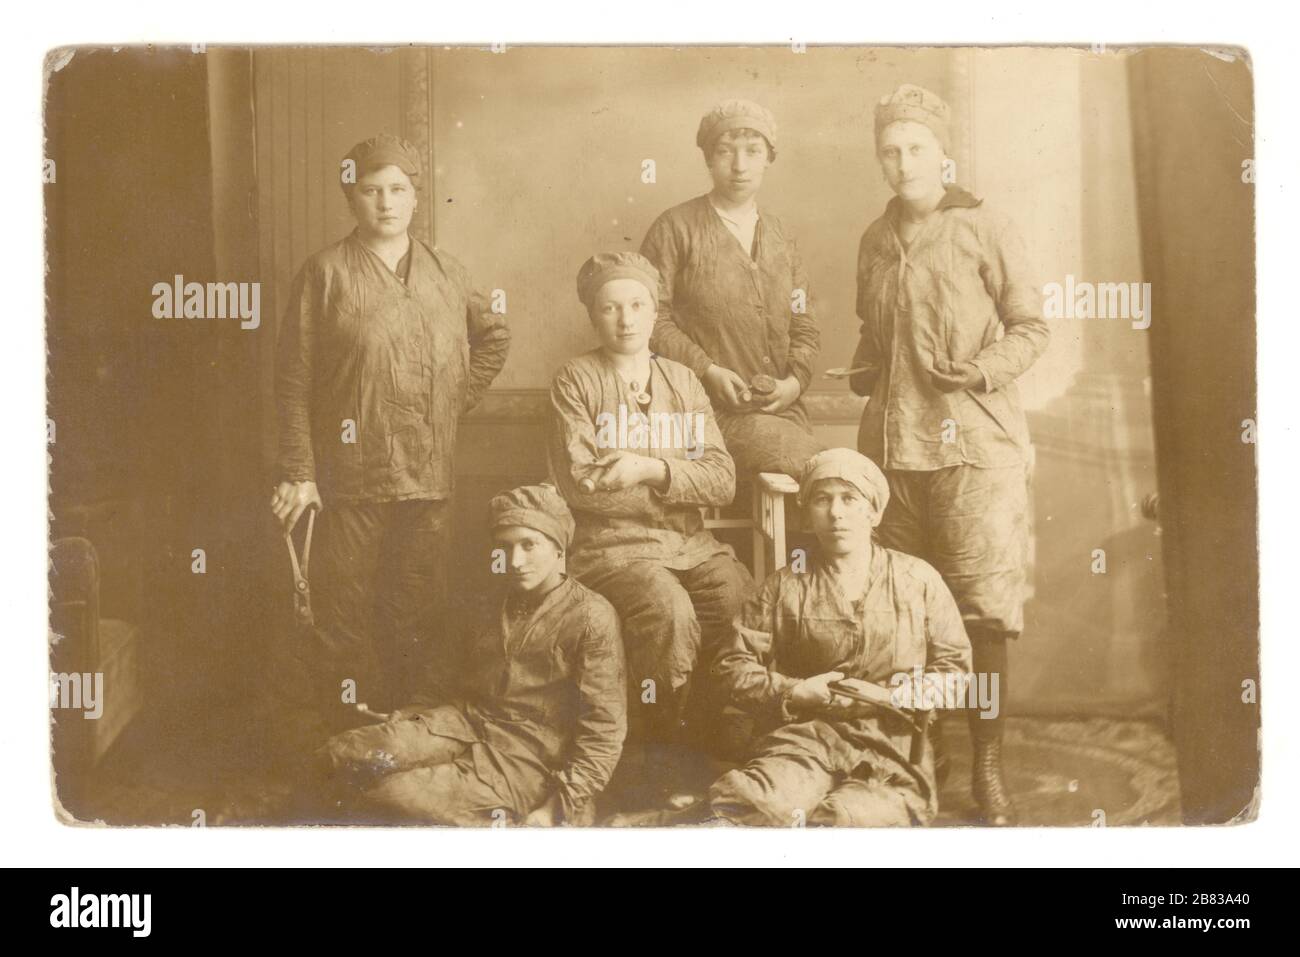 Originale WW1 era vera cartolina fotografica di rivettatrici signora tedesca - munizioni o lavoratori portuali che tengono rivetti, 1914-1918, Germania Foto Stock